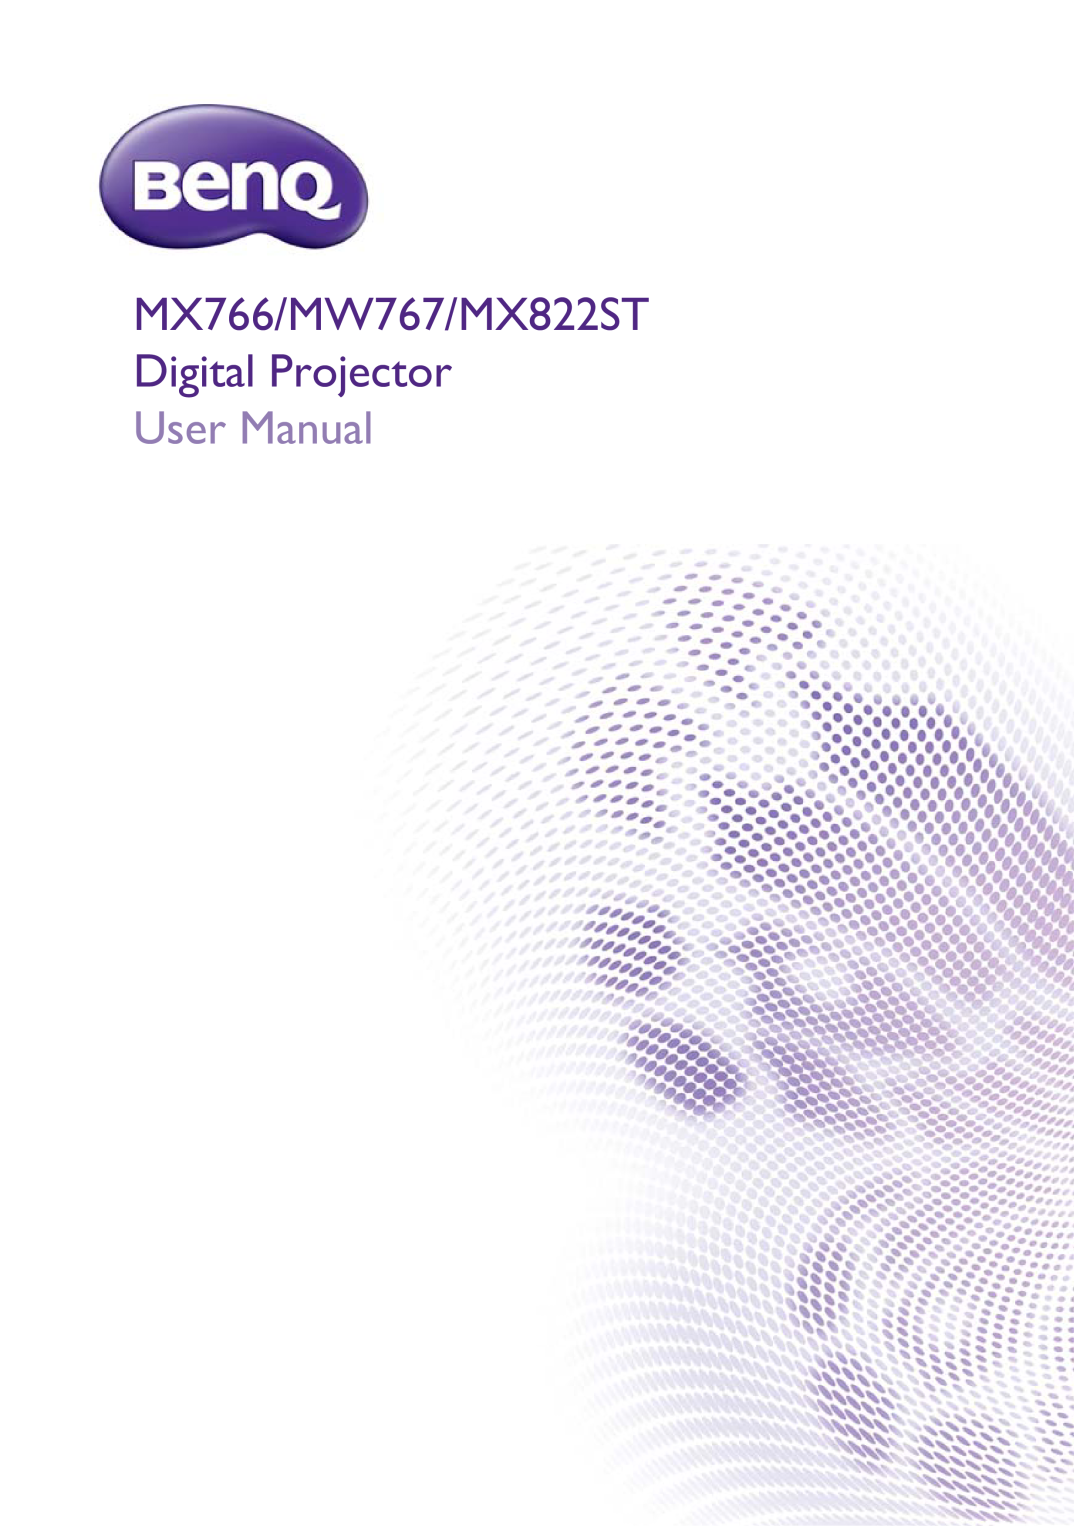 BenQ user manual MX766/MW767/MX822ST Digital Projector, User Manual 